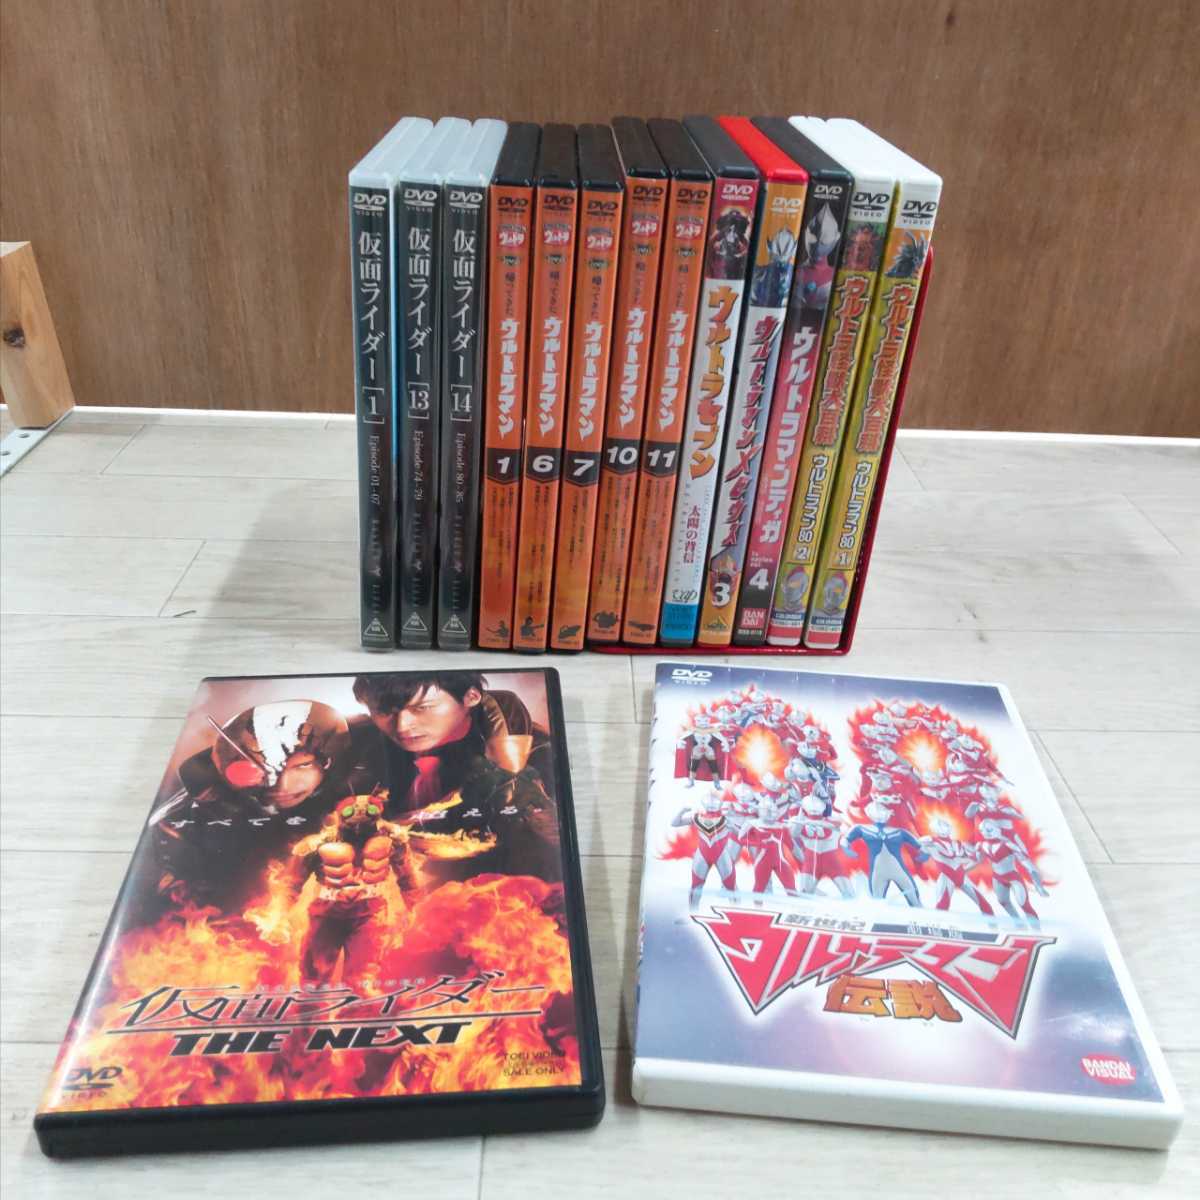 002 ウルトラマン 仮面ライダー dvd 15本セット ウルトラセブン